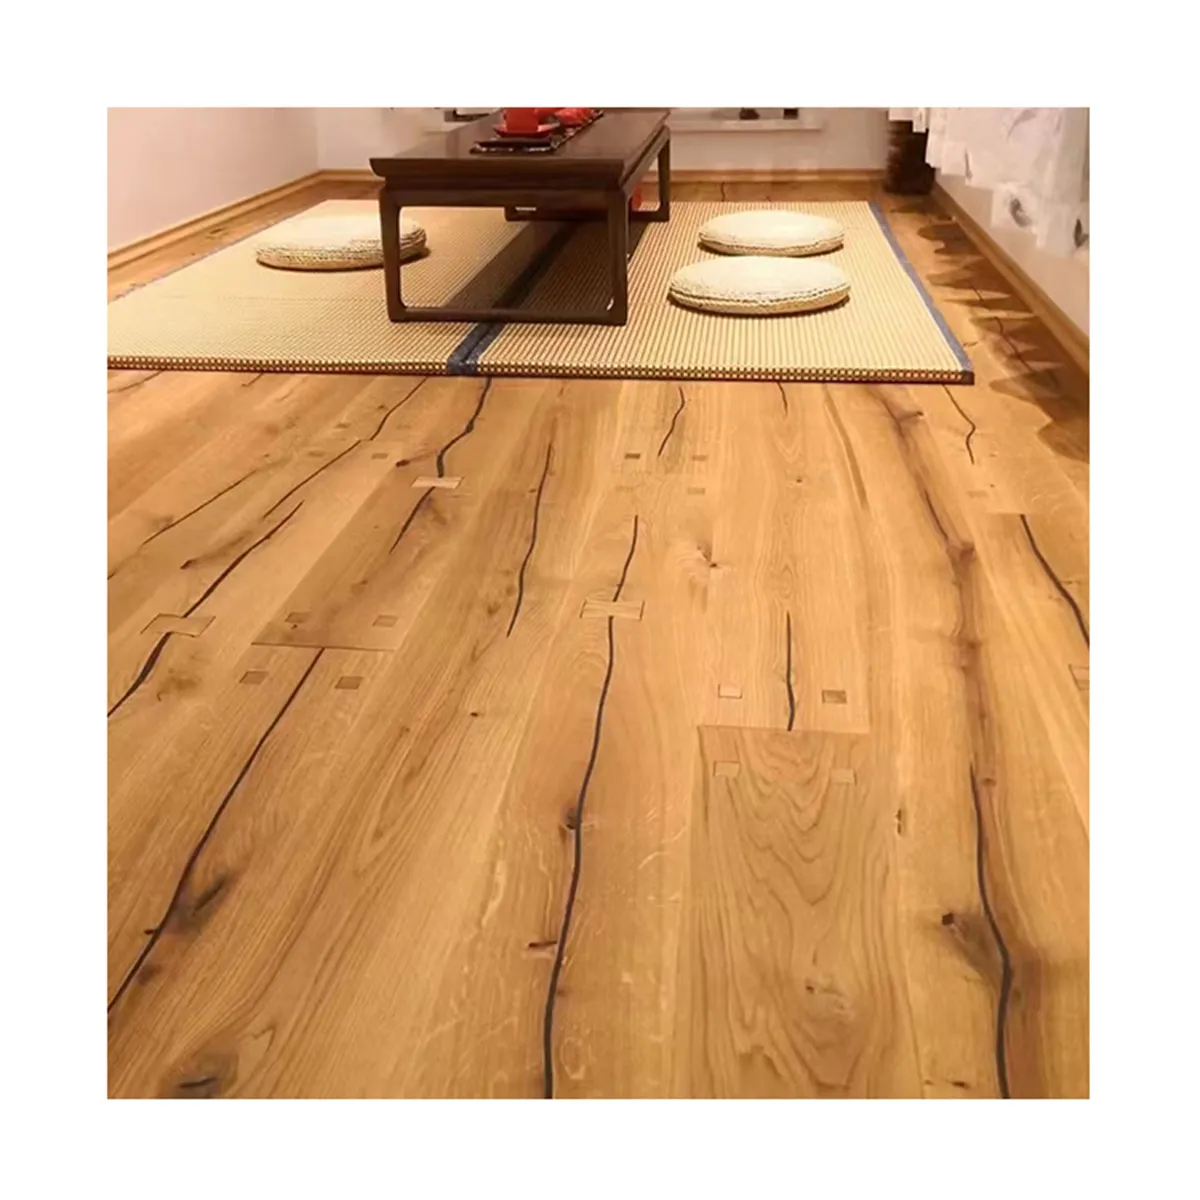 רצפת עץ סיטונאי באיכות גבוהה אלון סיני 3 שכבות ריצוף דפוס עץ לפנים